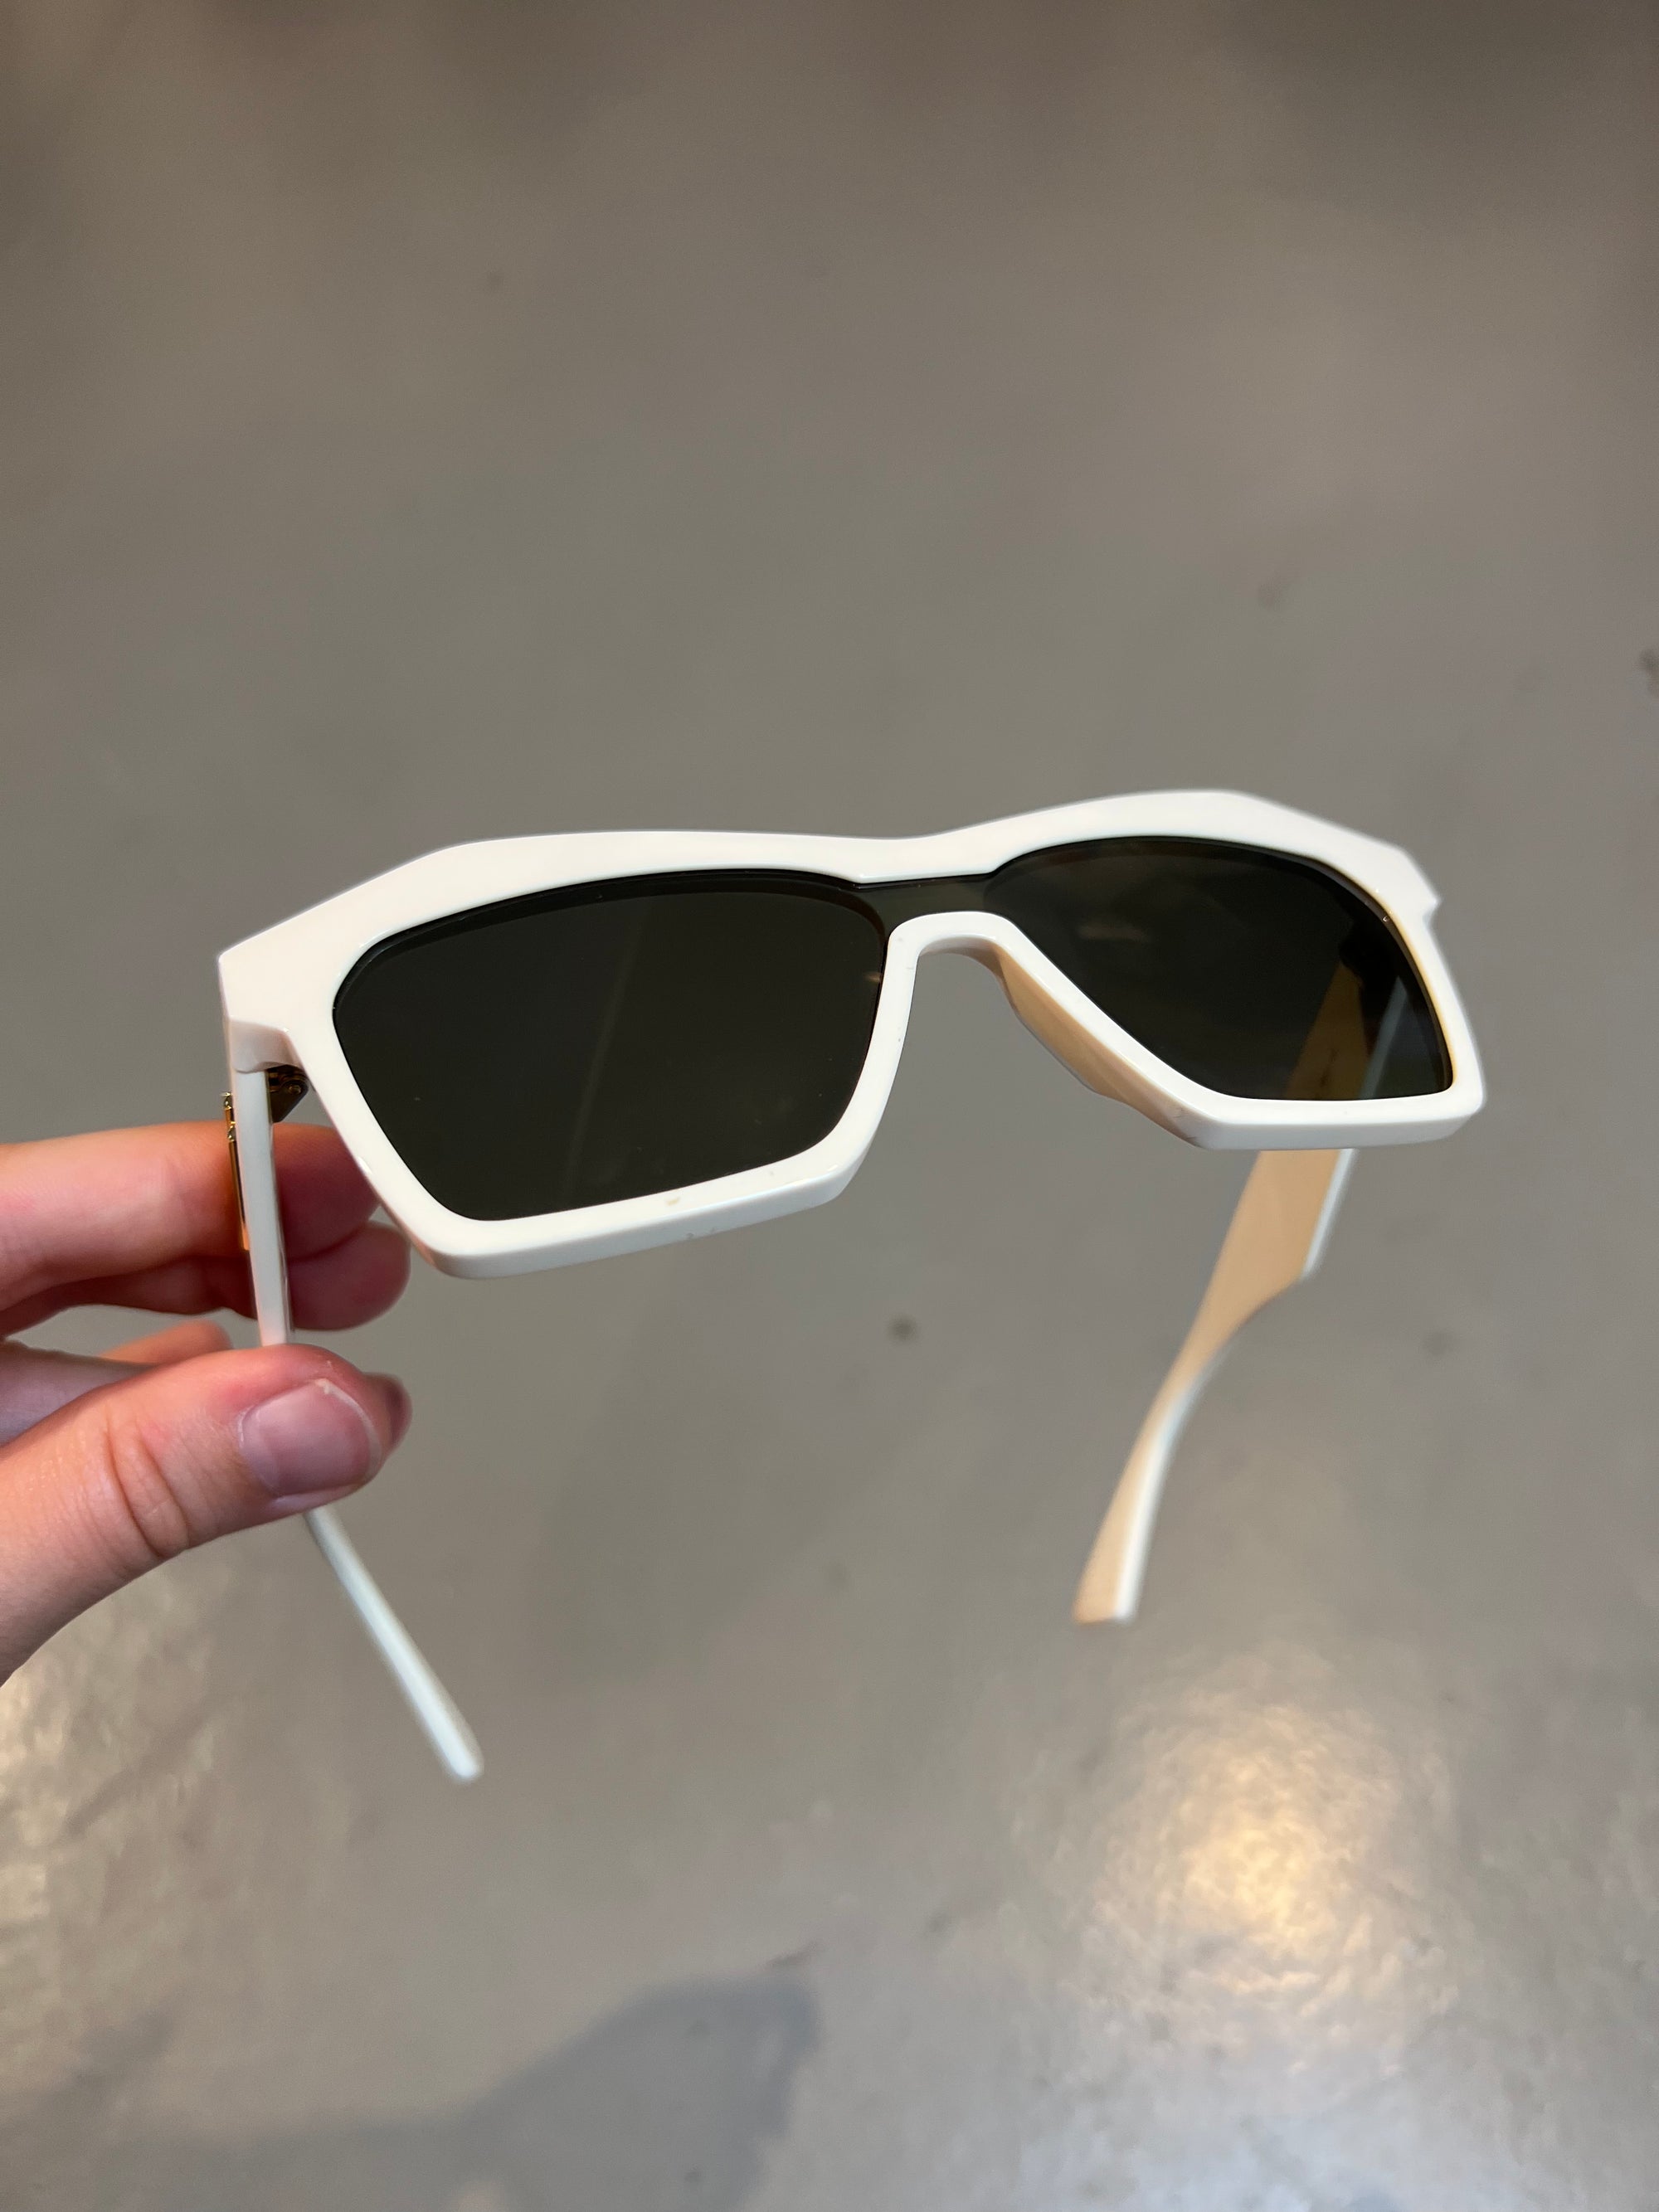 Produktbild von einer Bottega Veneta Sonnenbrille mit beigen Gehäuse vor einem grauen Hintergrund. 